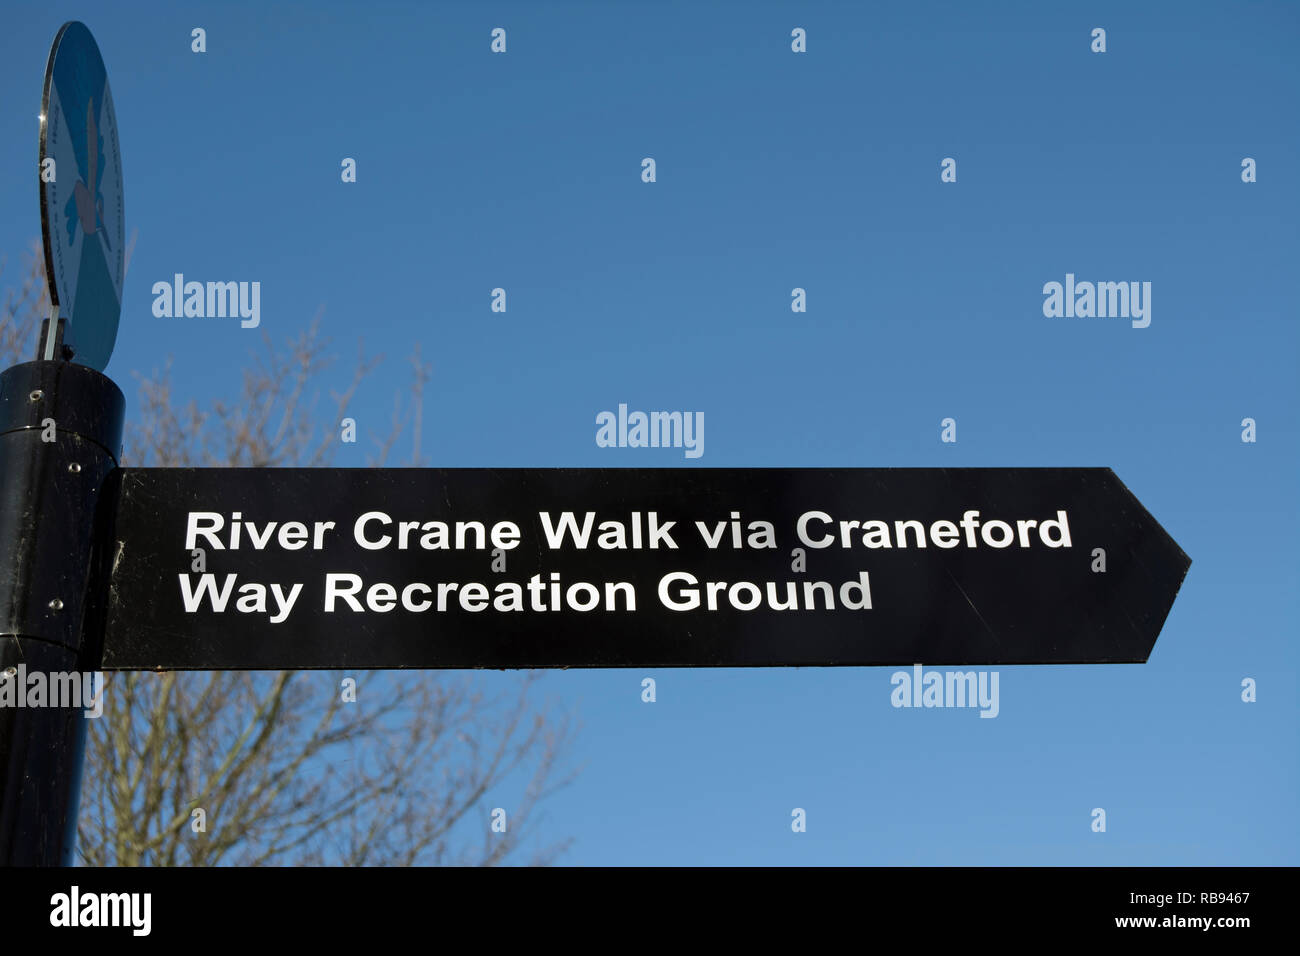 Direzione segno che indica il percorso verso il fiume crane a piedi, a Twickenham, middlesex, Inghilterra, via craneford modo terreno di ricreazione Foto Stock